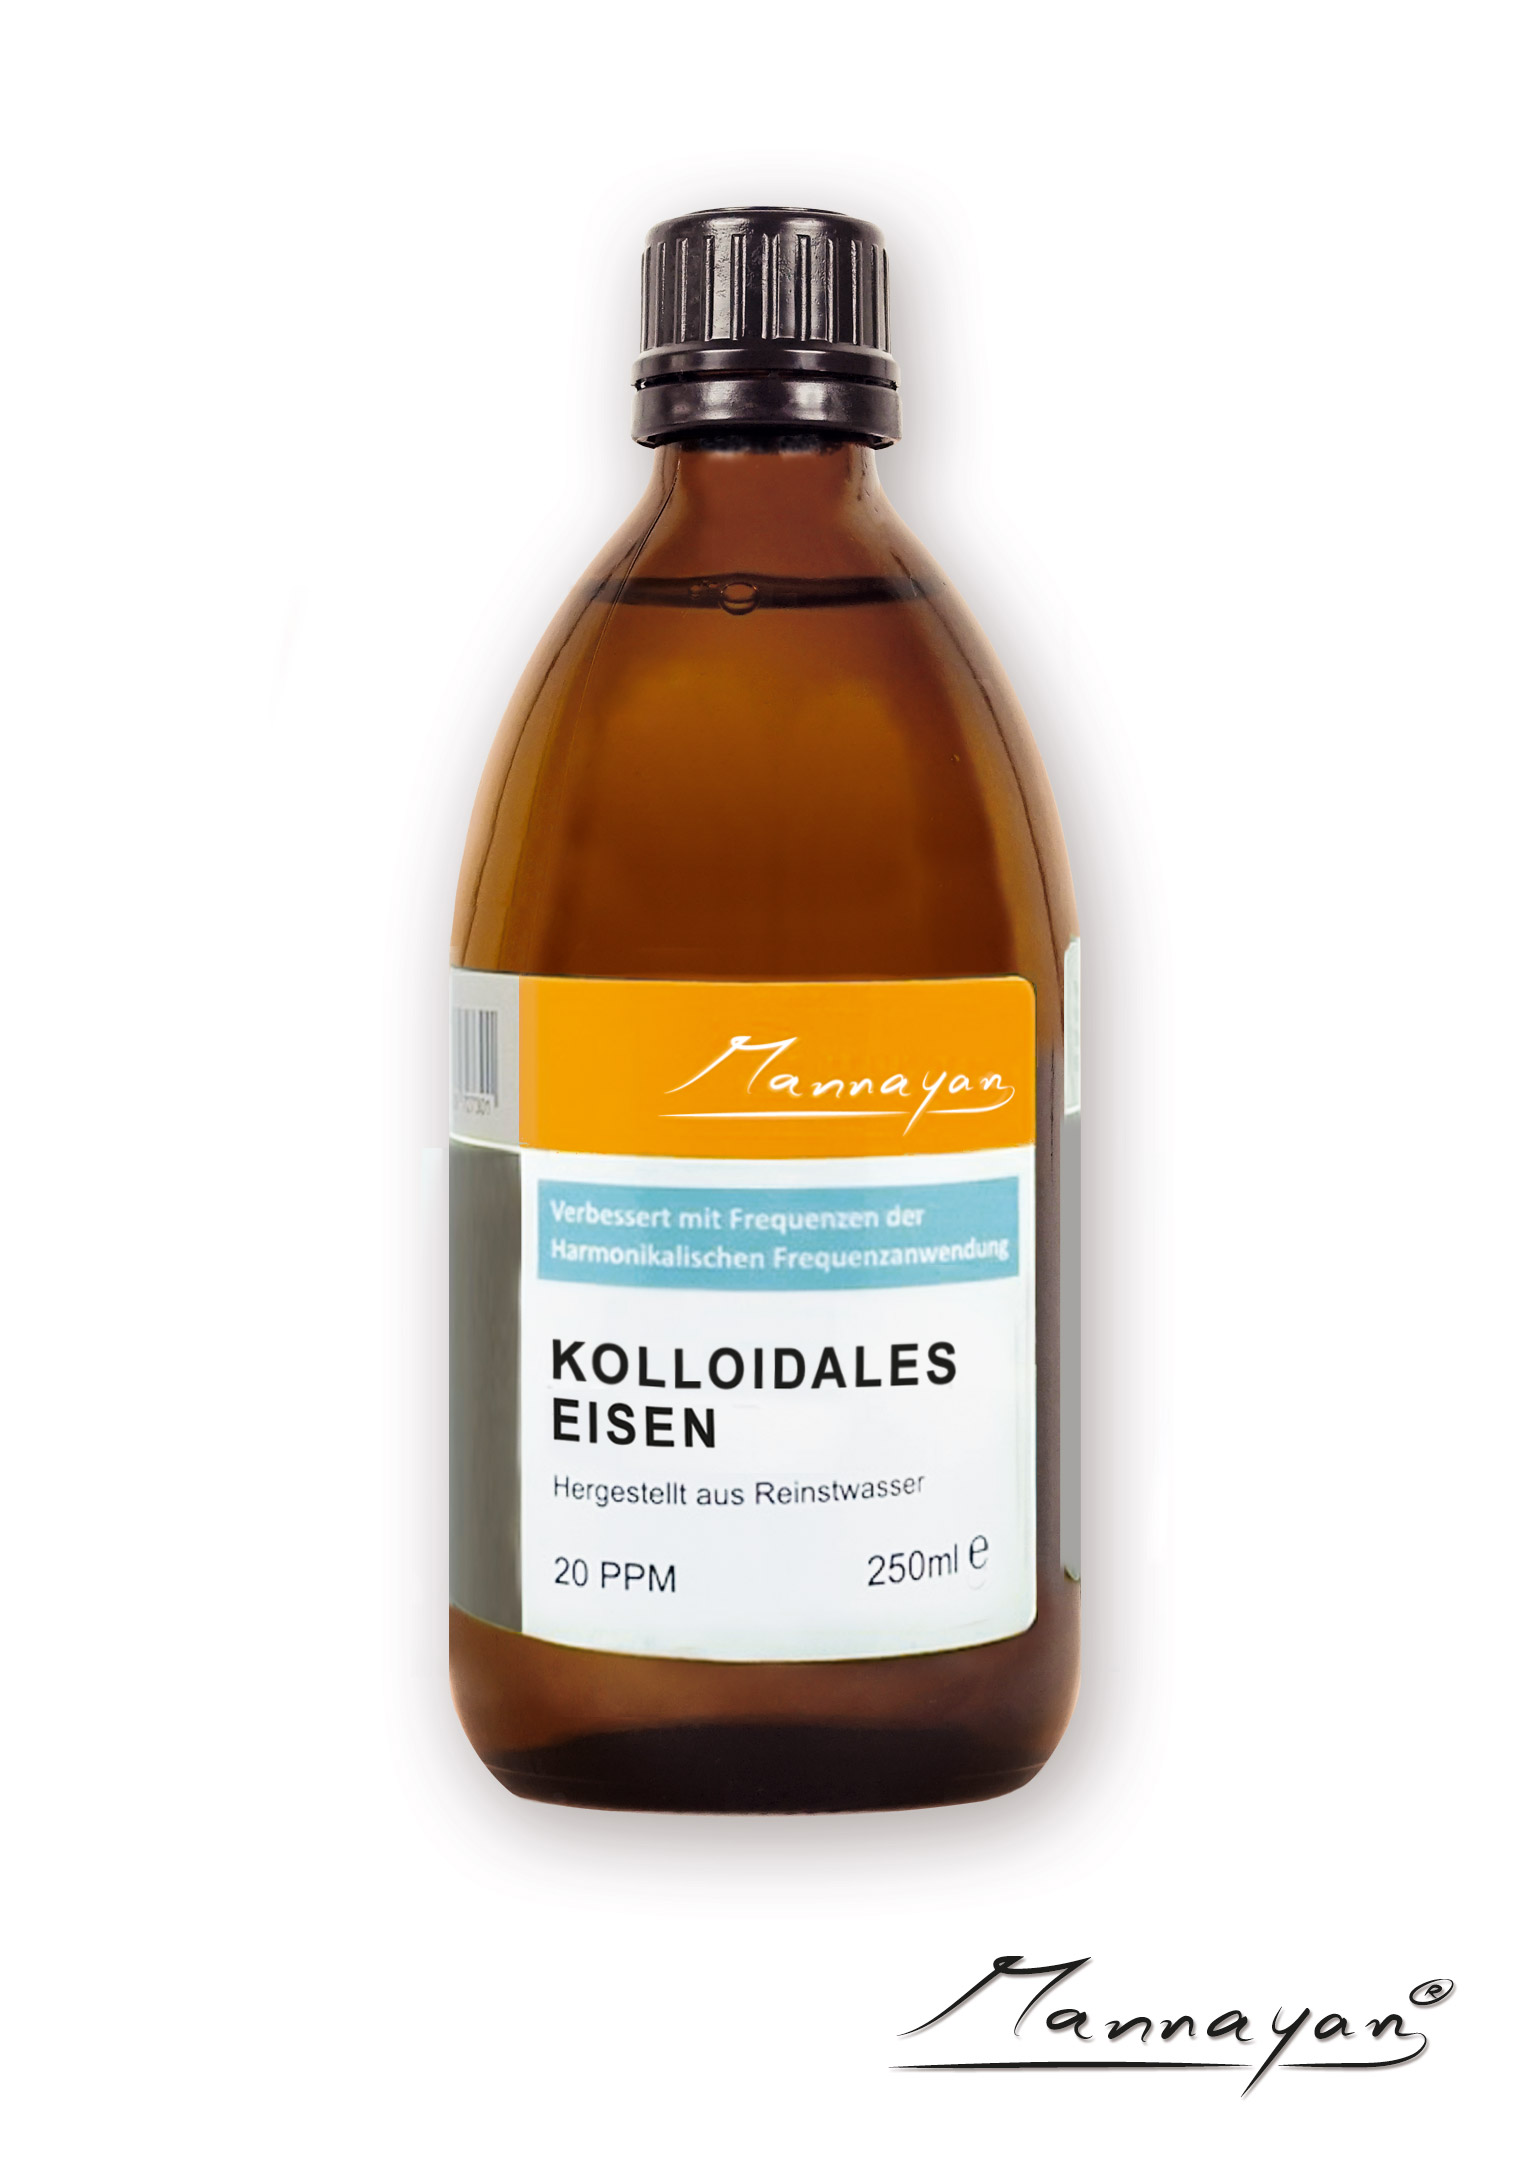 Mannayan Kolloidales Eisen 250 ml 